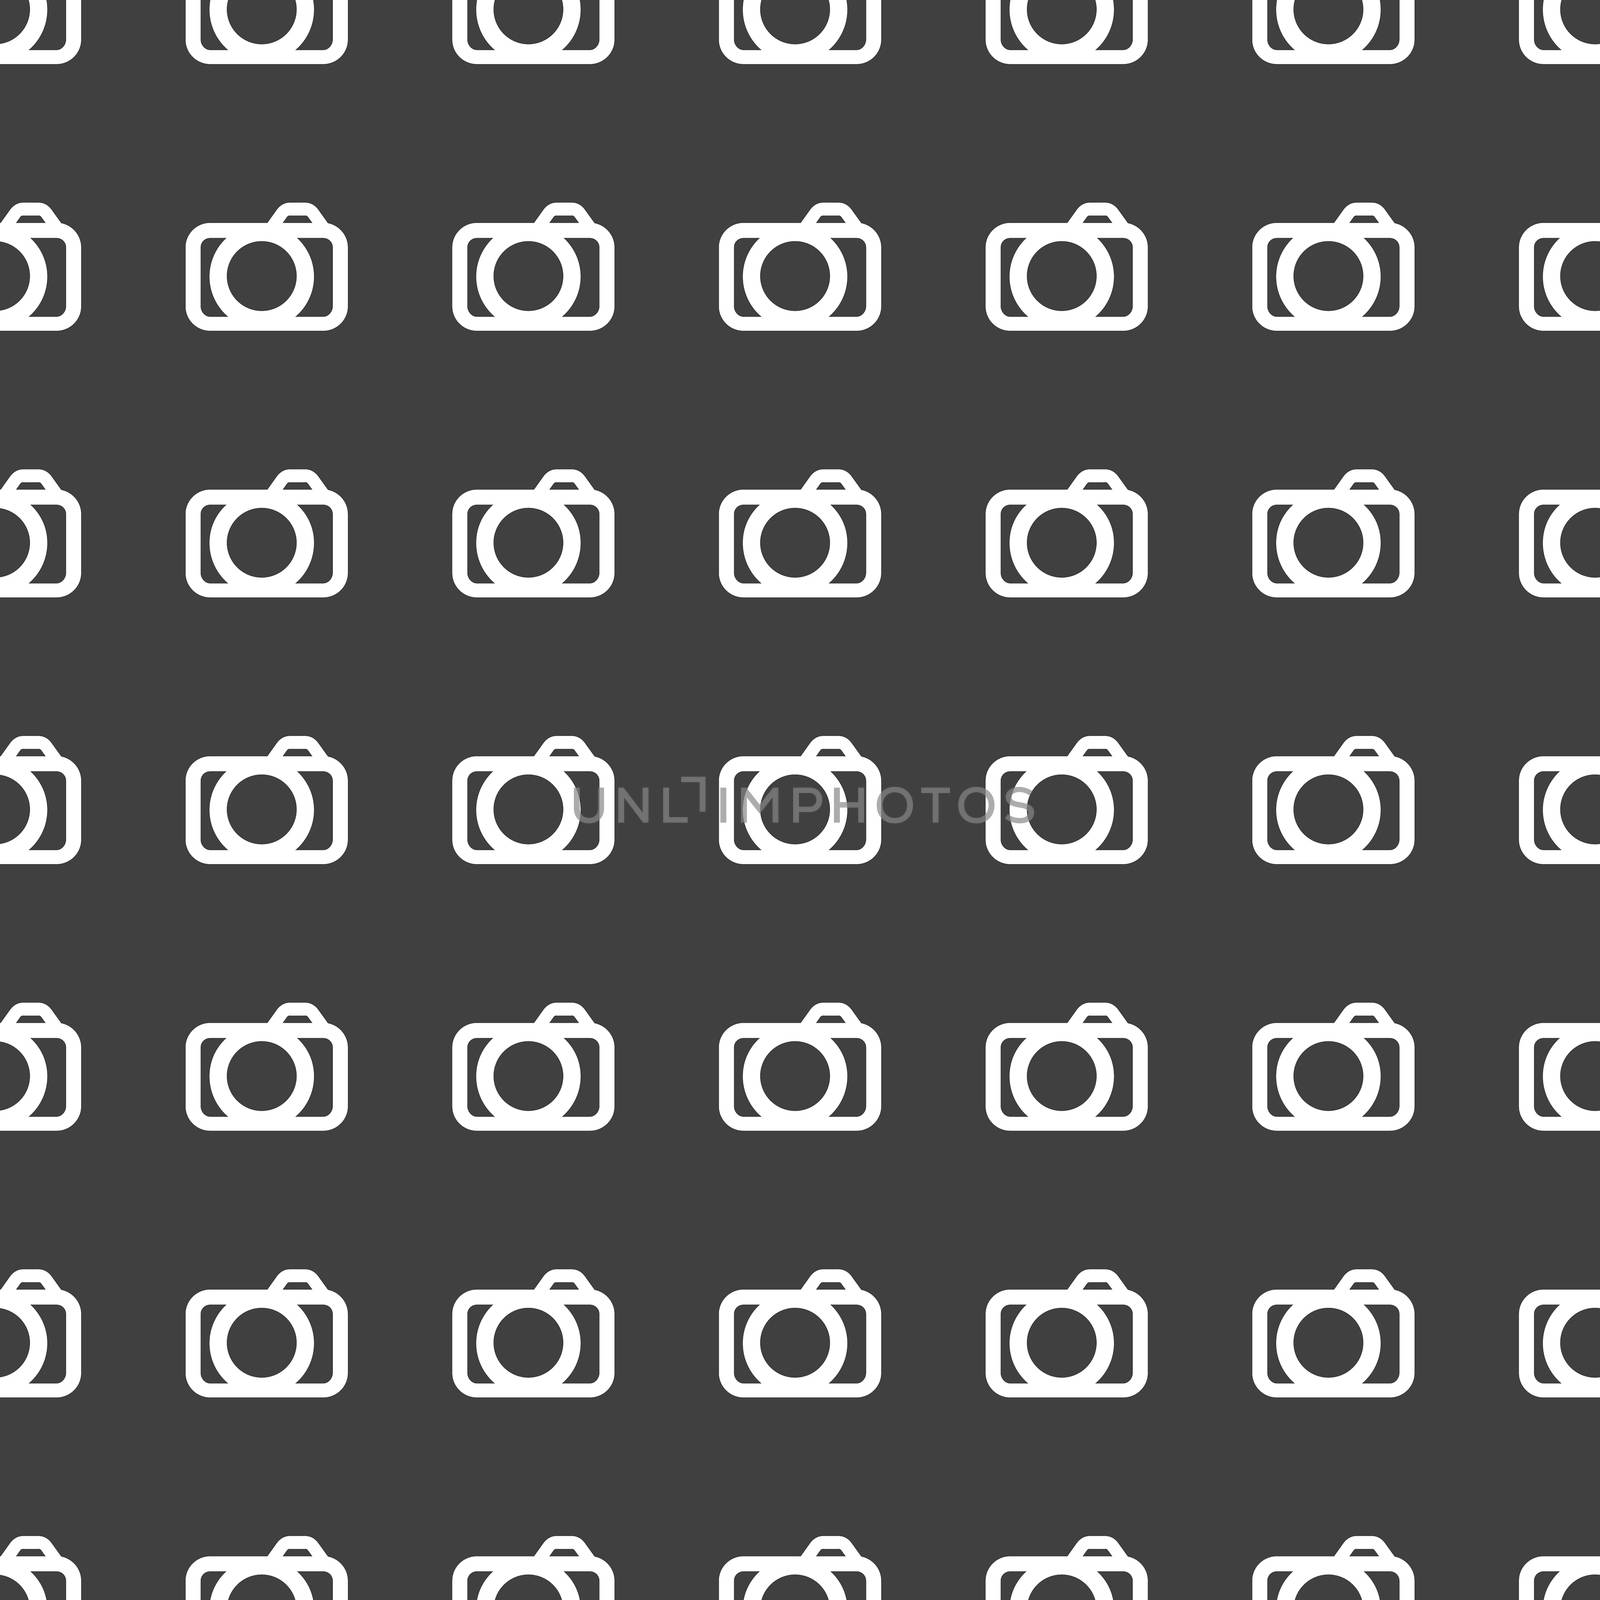 Camera web icon. flat design. Seamless pattern.